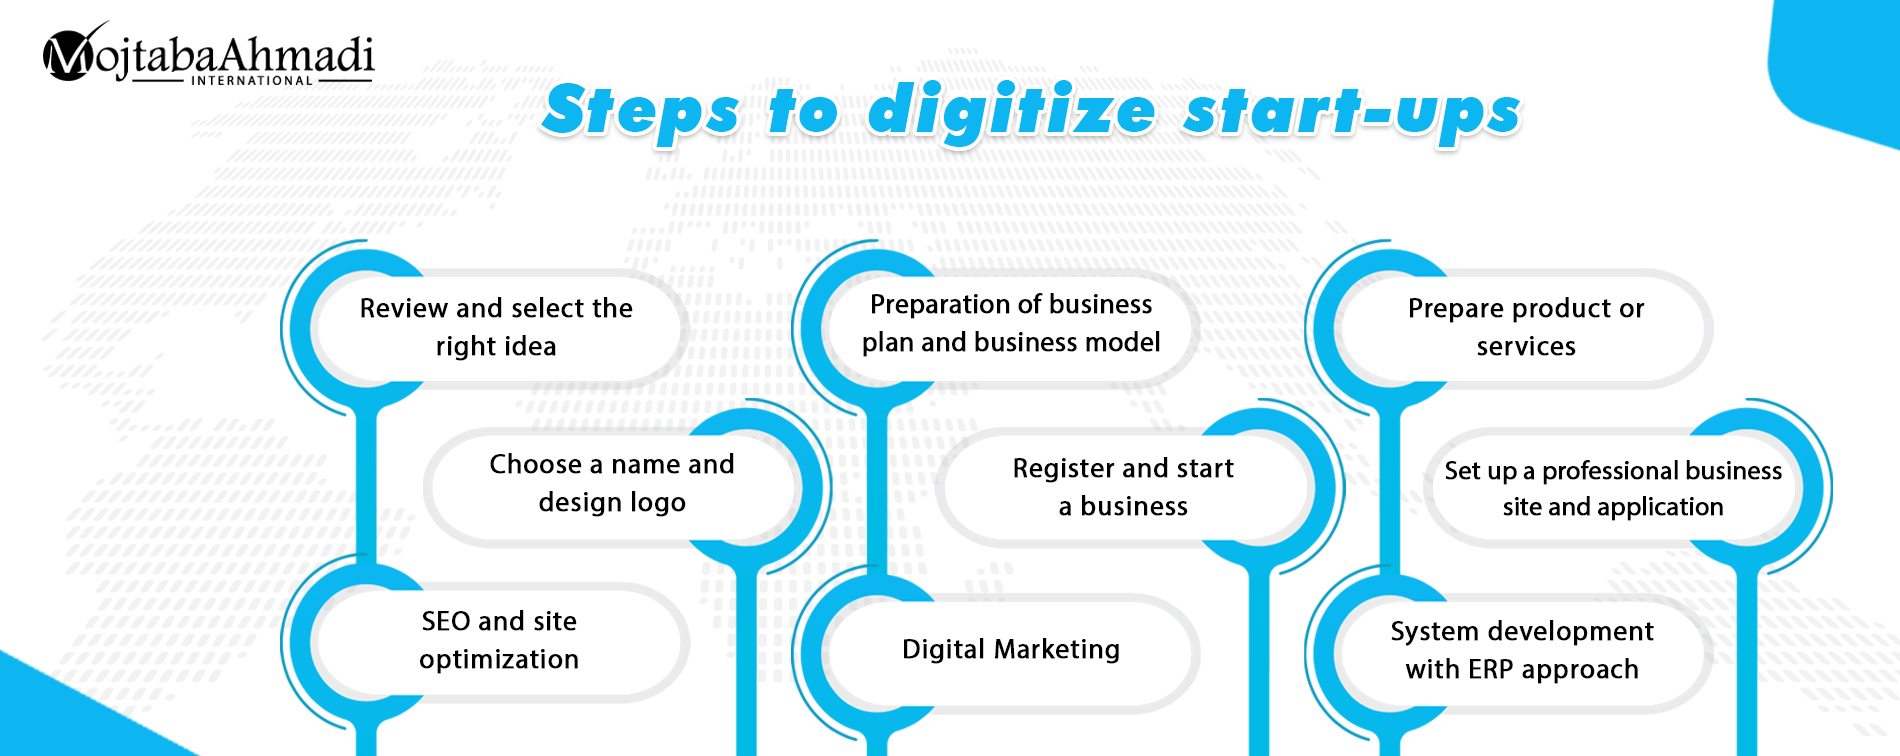 Steps of digitalization of start-up businesses